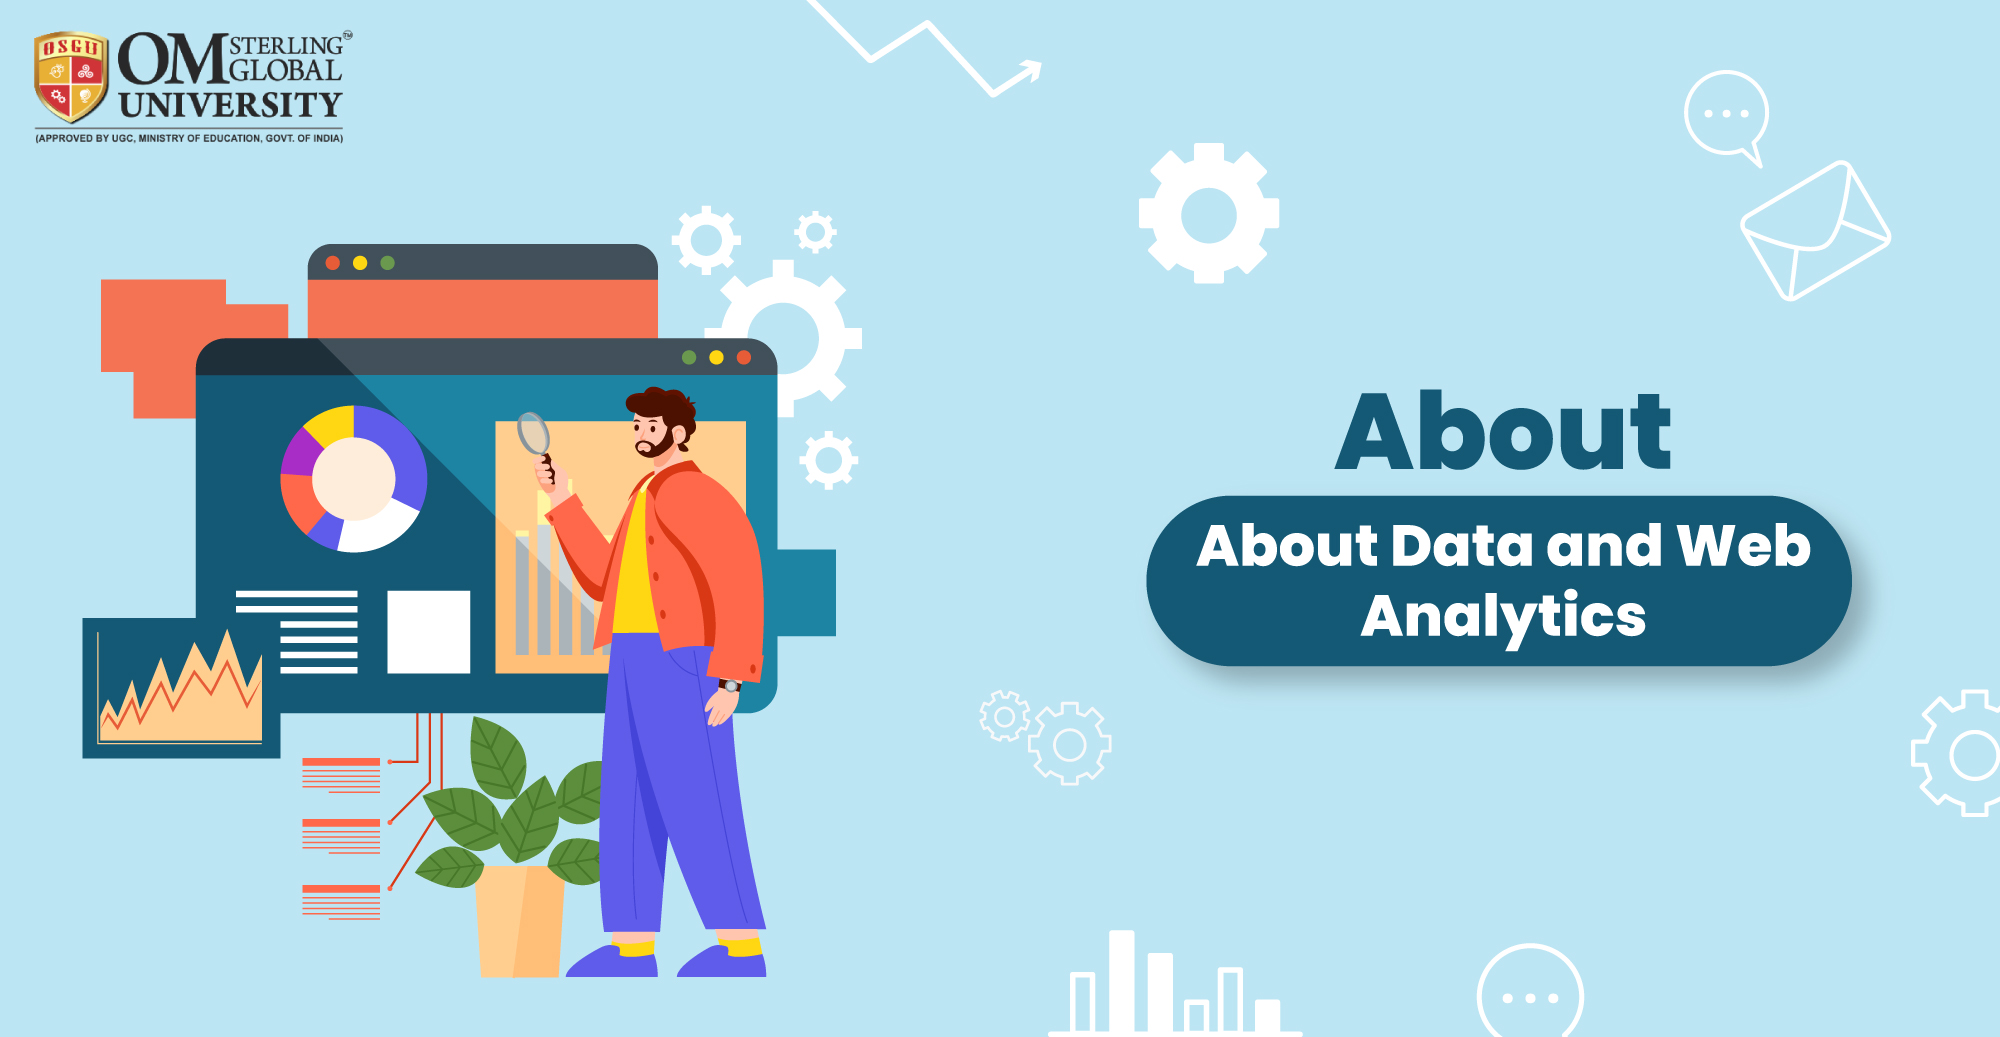 Data and Web Analytics